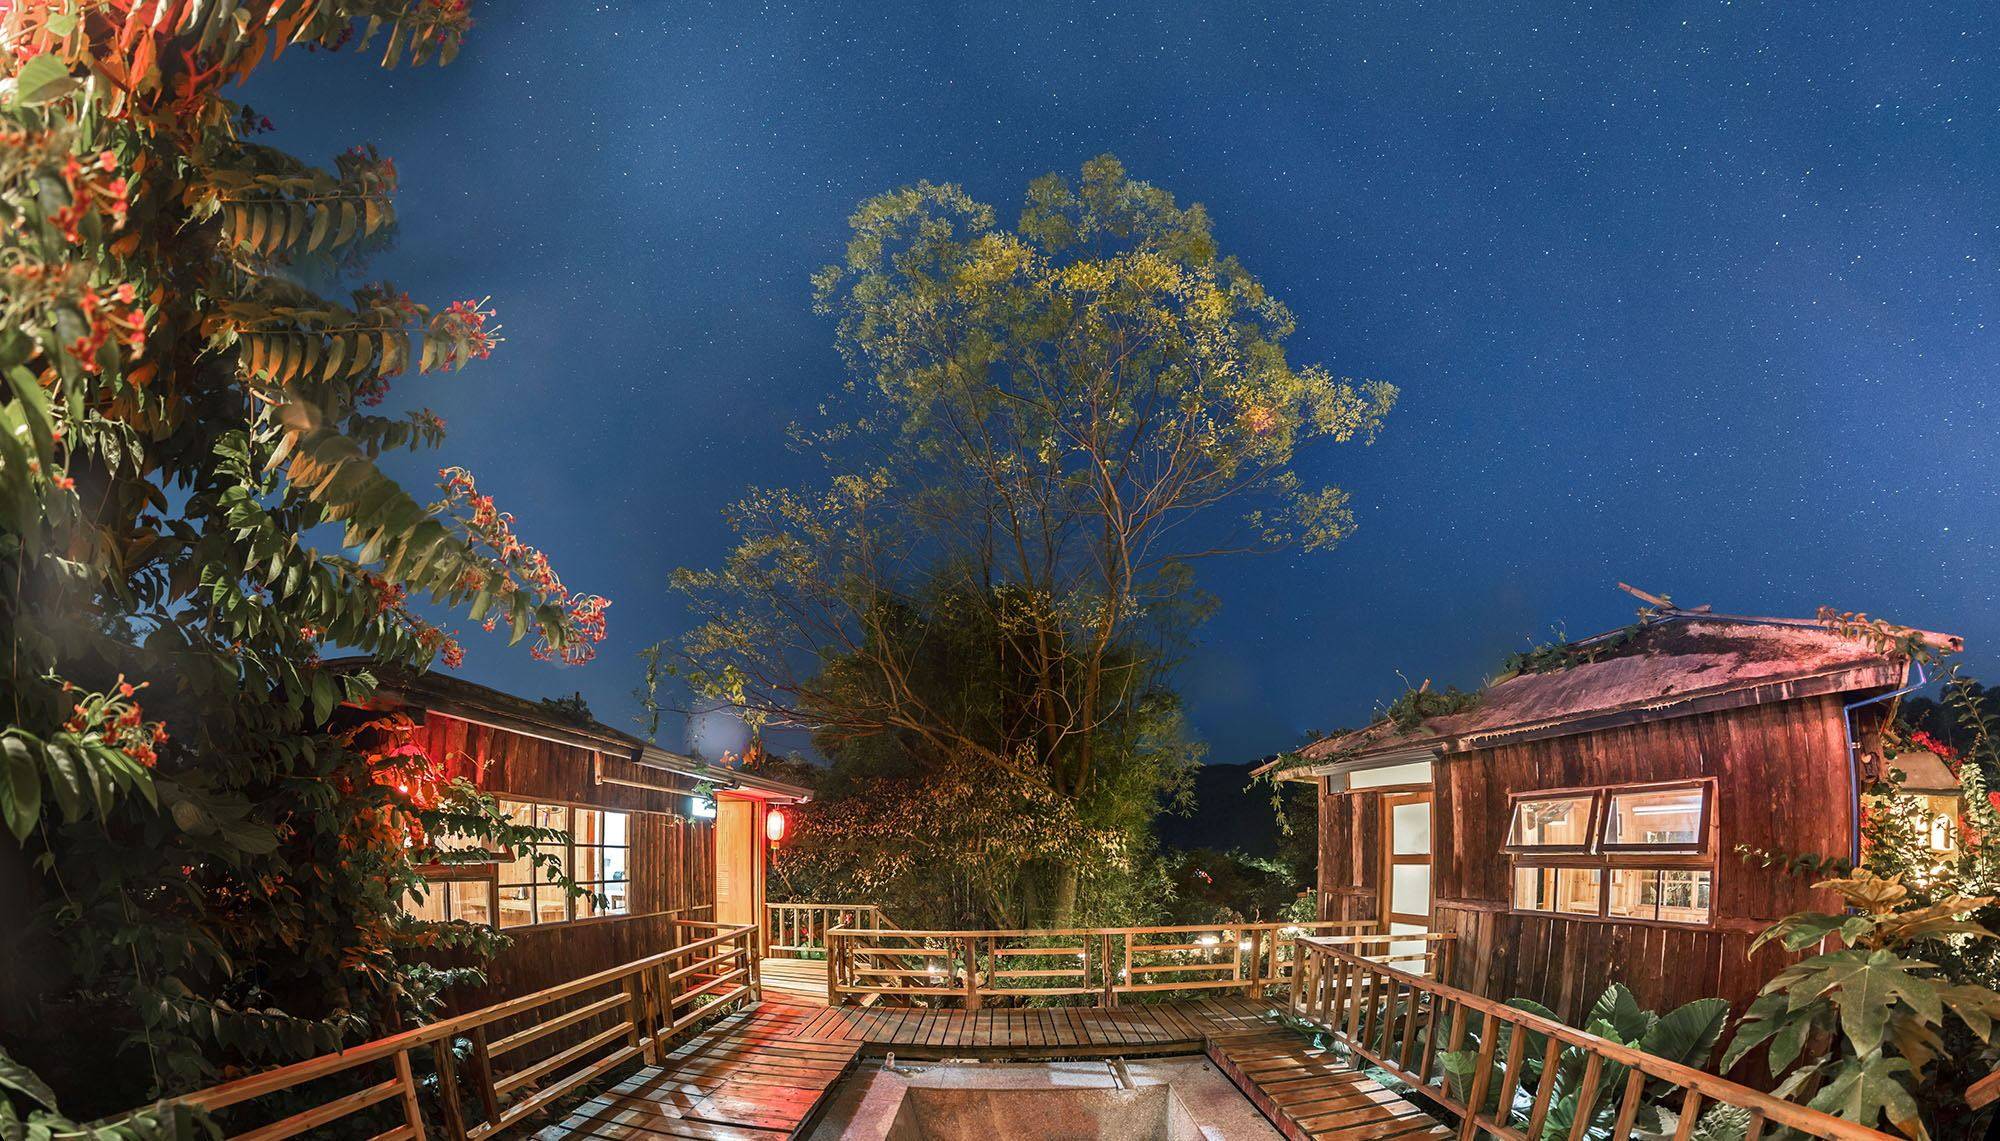 浮华建在山林魅影之中的温泉度假村位于广东清远市的英德九州驿站